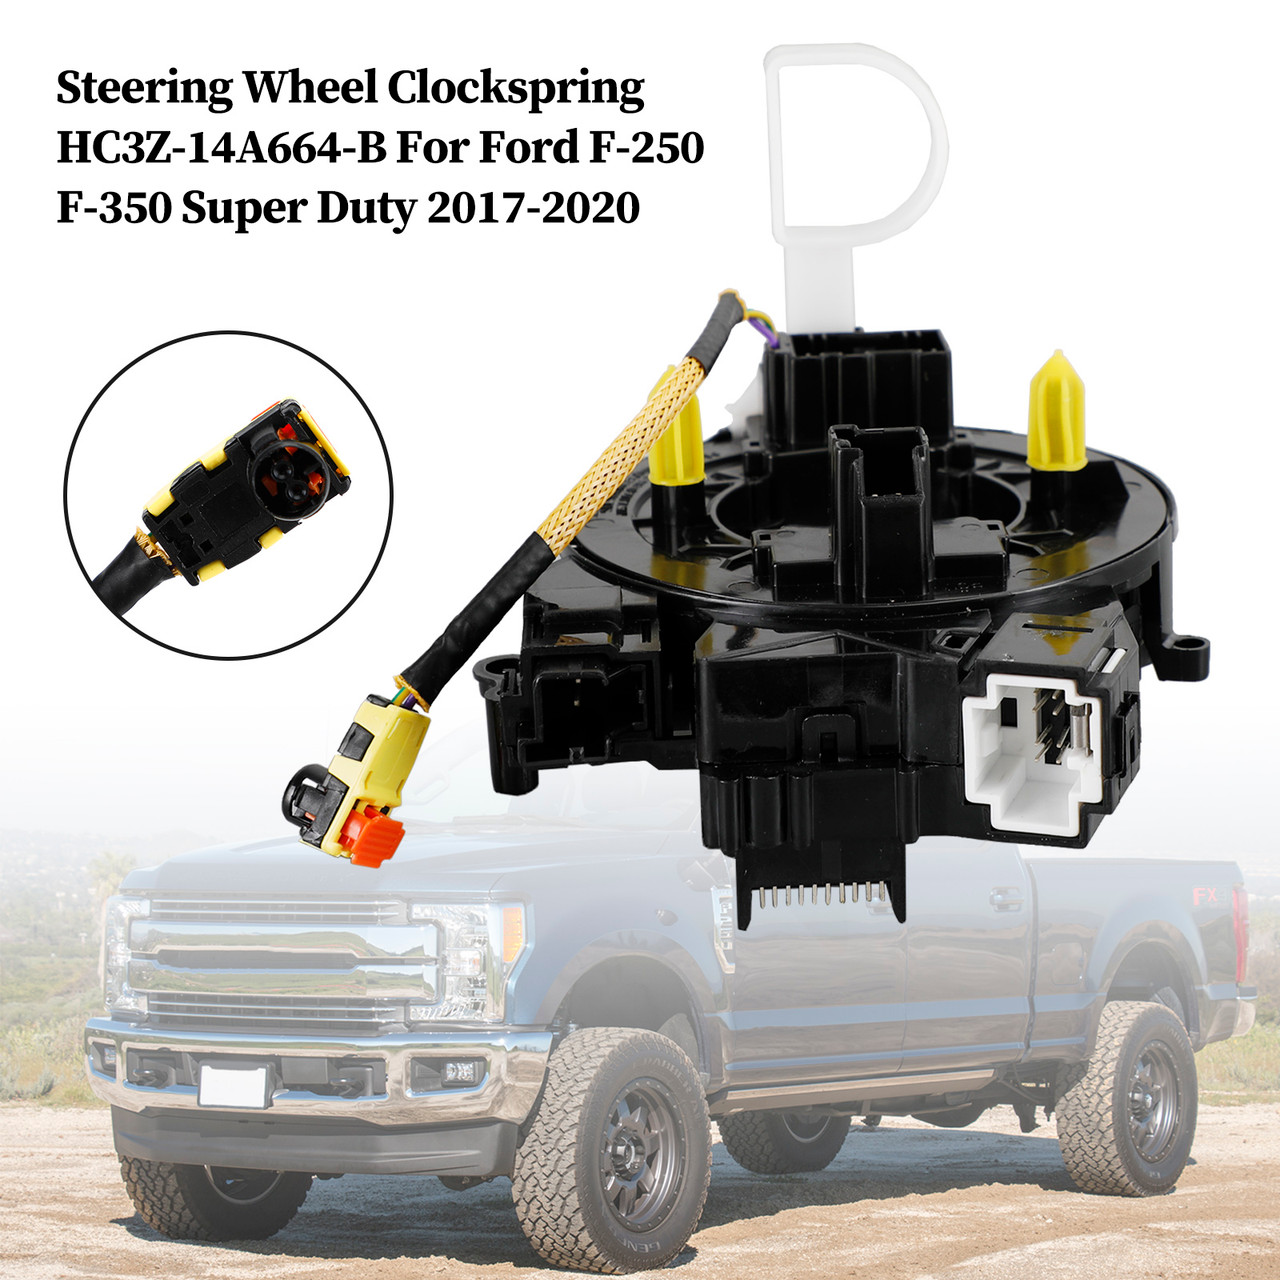 Steering Wheel Clockspring HC3Z-14A664-B For Ford F-250 F-350 Super Duty 2017-2020